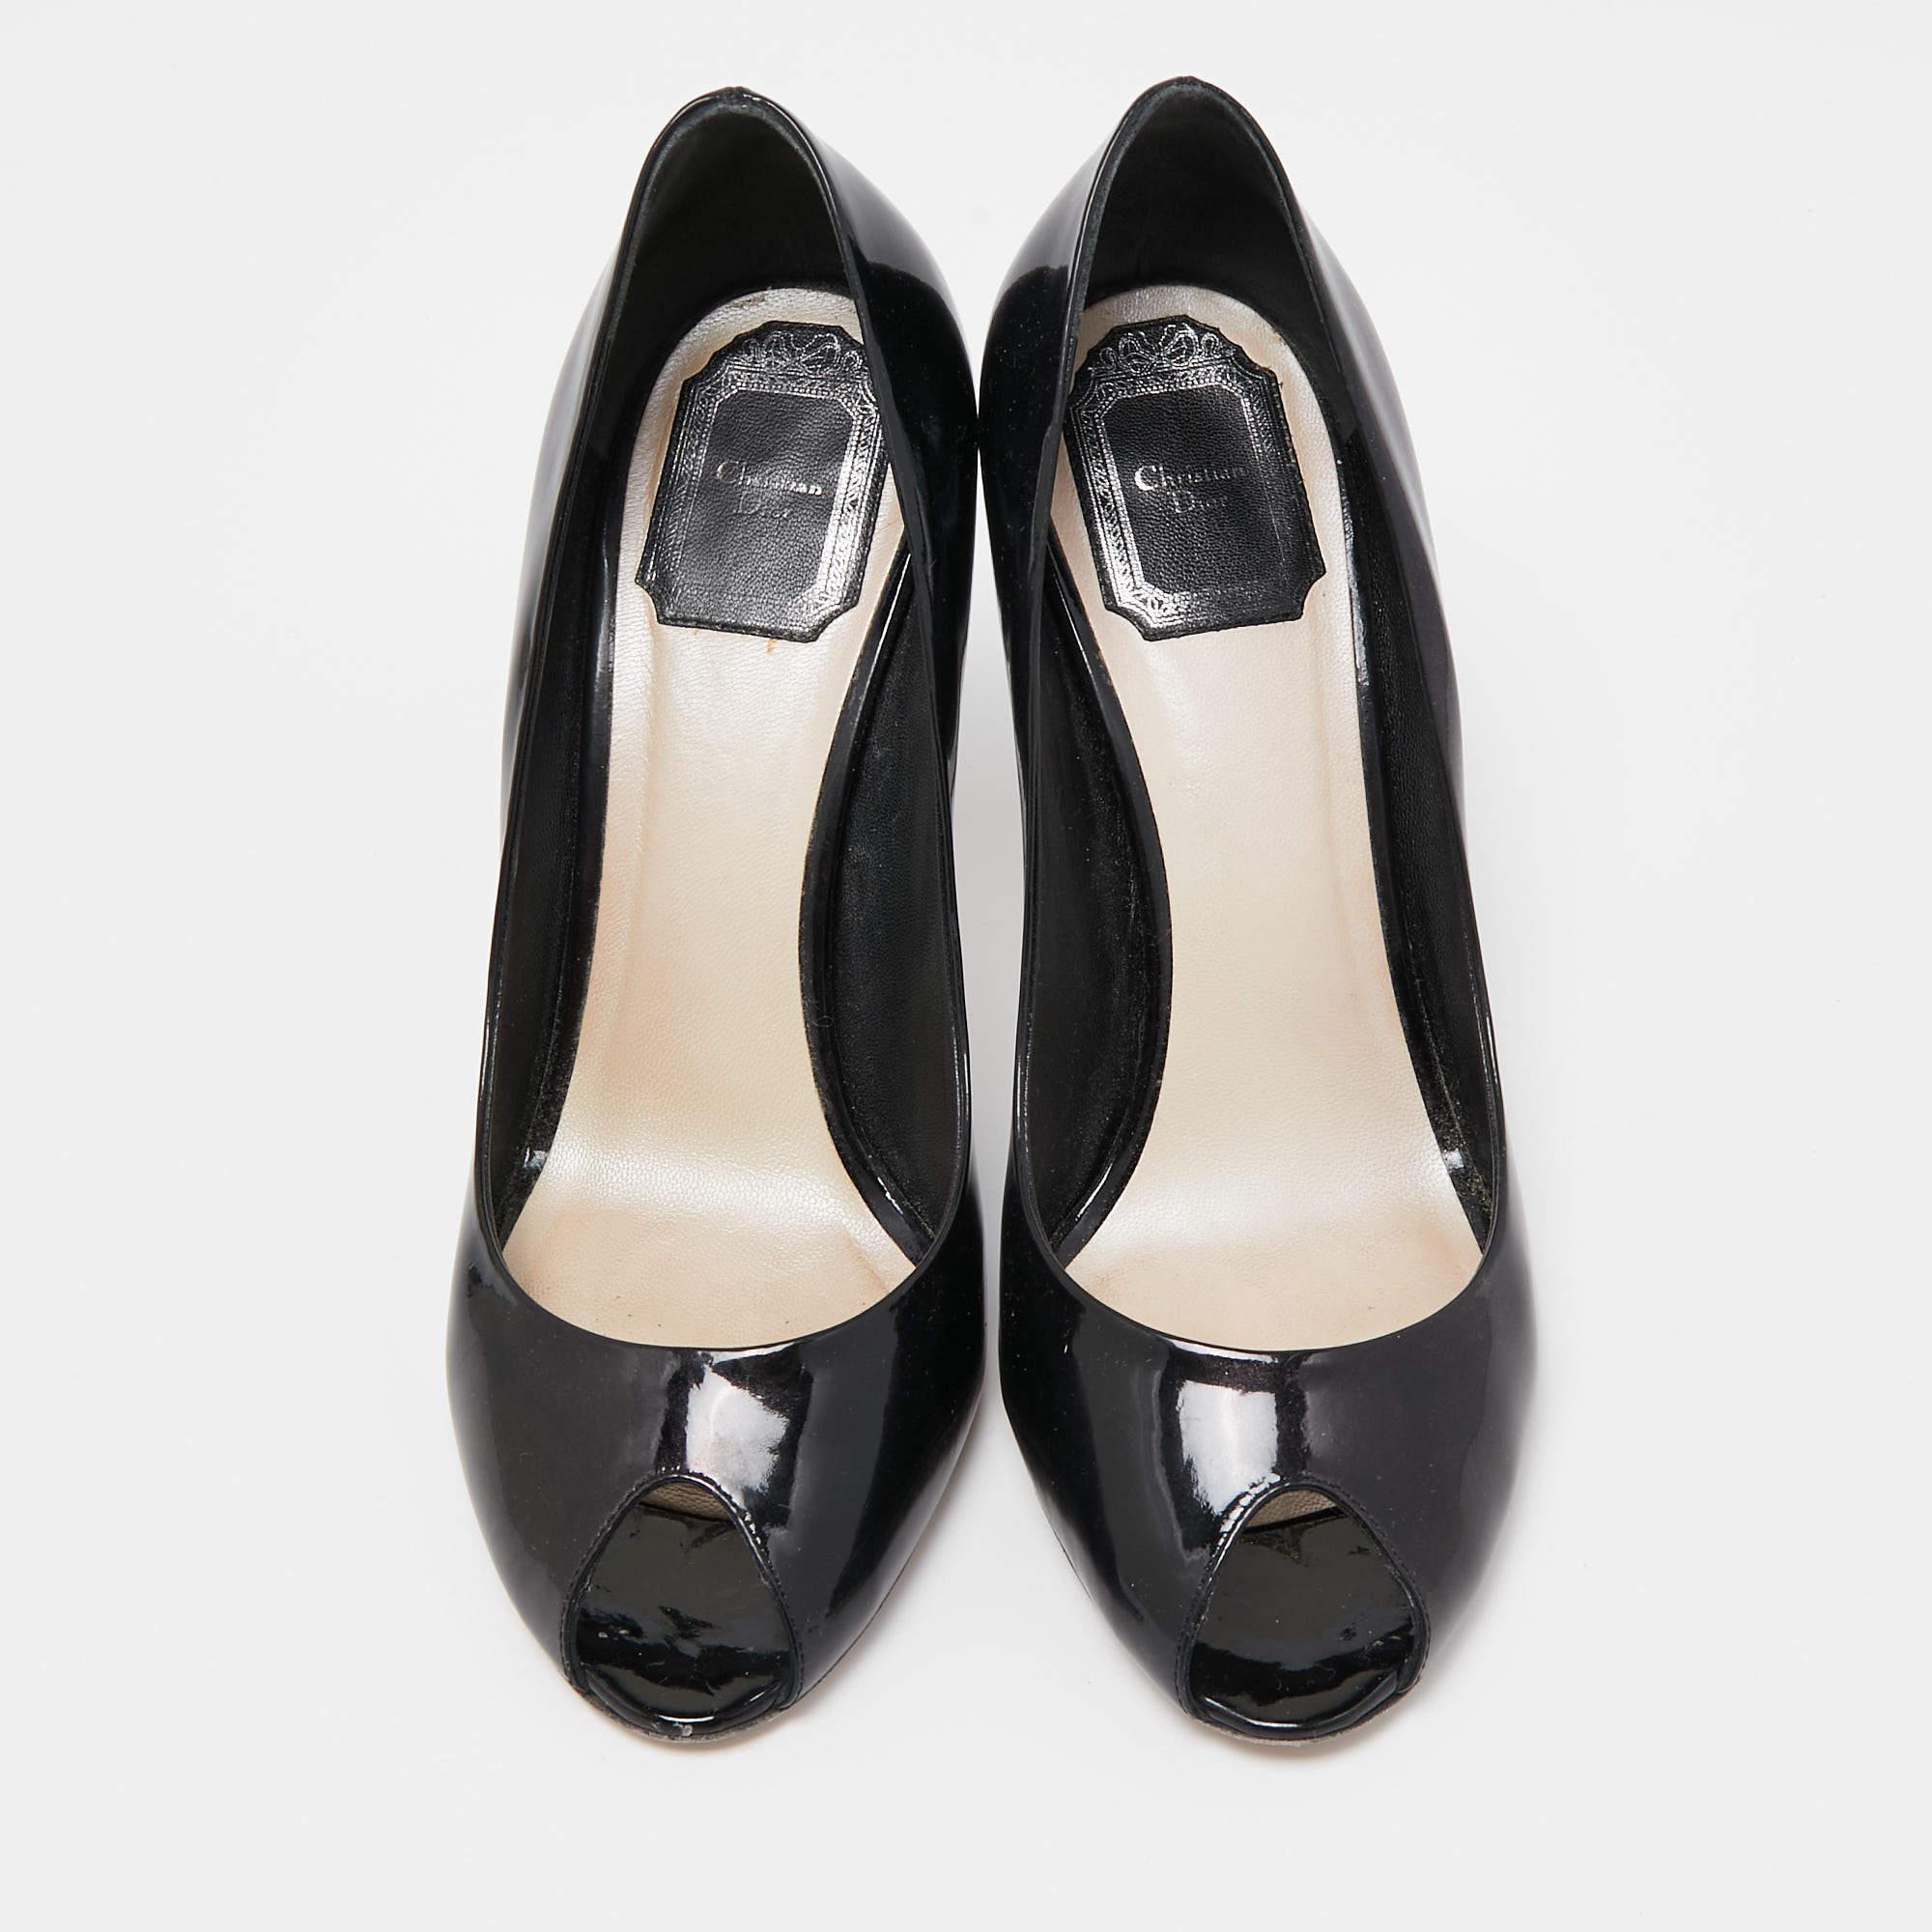 Dior Black Patent Miss Dior Peep Toe Pumps Size 38 In Good Condition For Sale In Dubai, Al Qouz 2